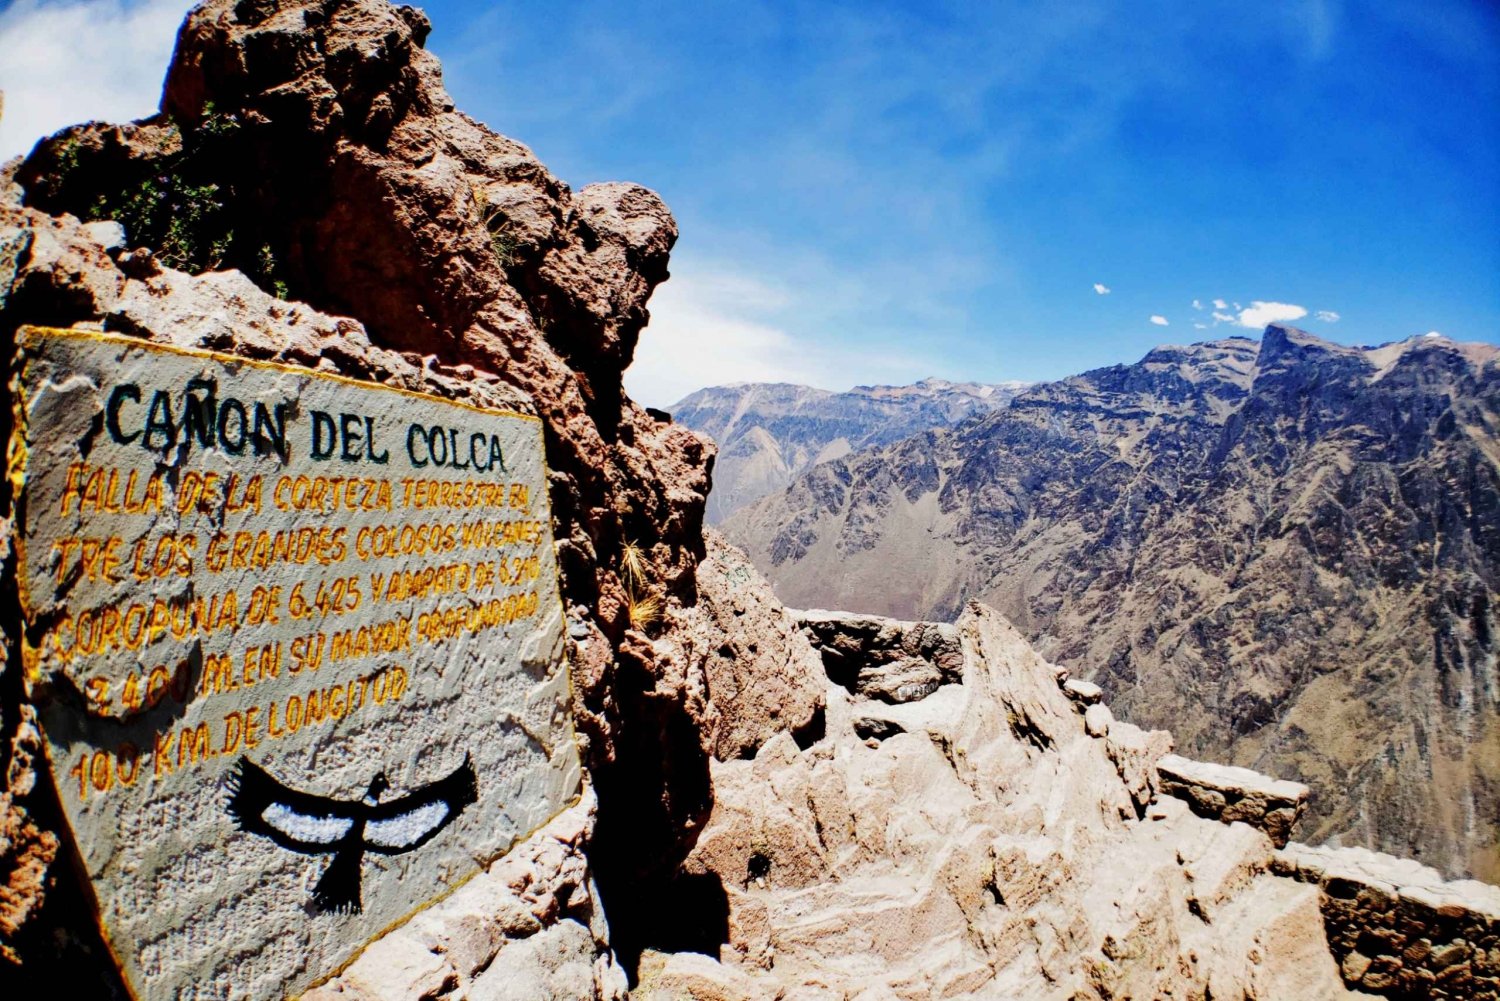 Da Puno: tour di 2 giorni del Canyon del Colca ad Arequipa